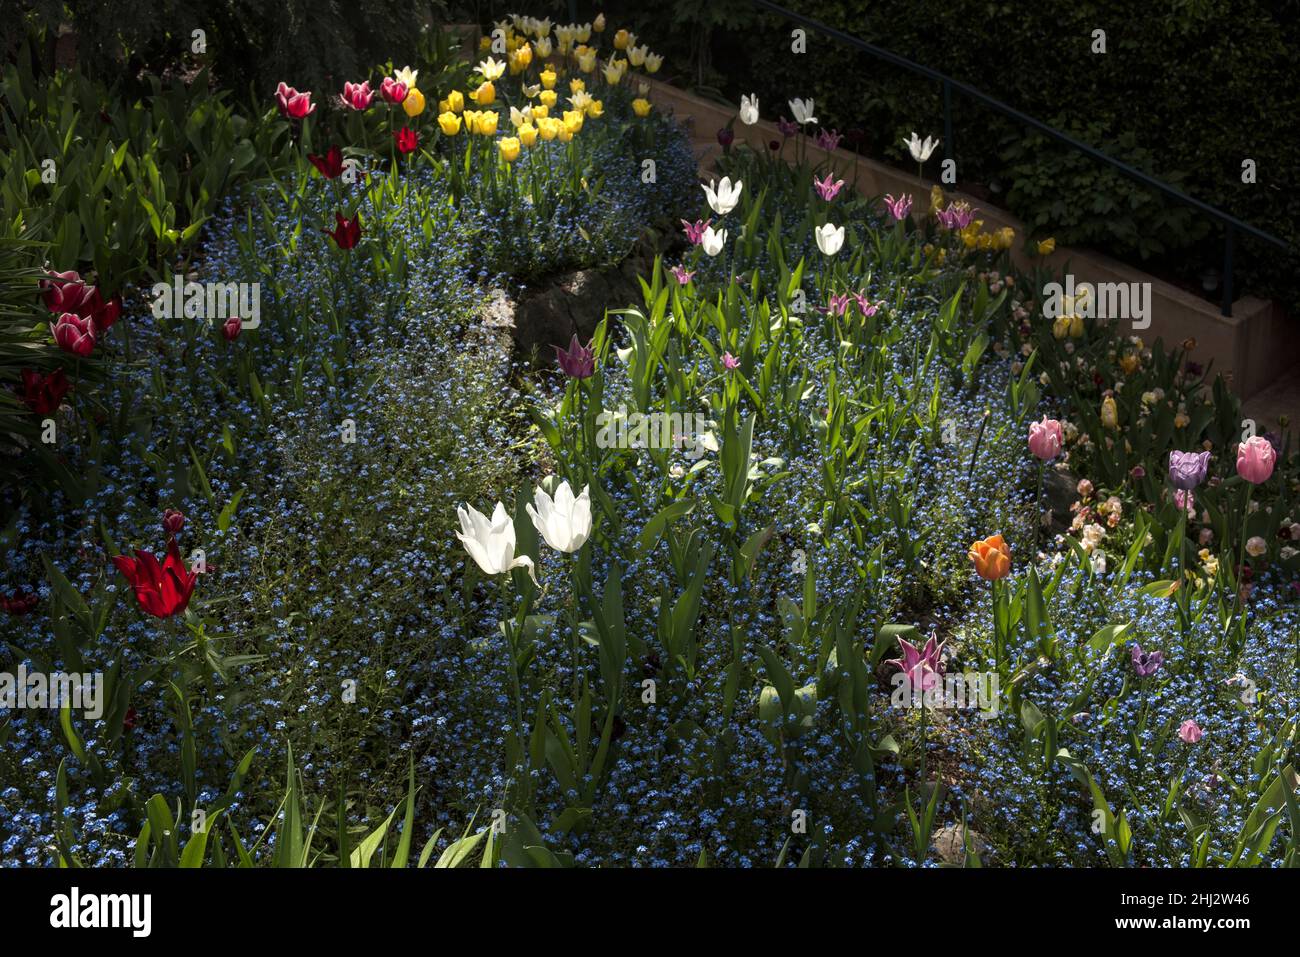 Jardins de tulipes à Crystal Hermitage, qui fait partie de la communauté Ananda située à environ 15 miles au nord-est de Nevada City, Californie Banque D'Images